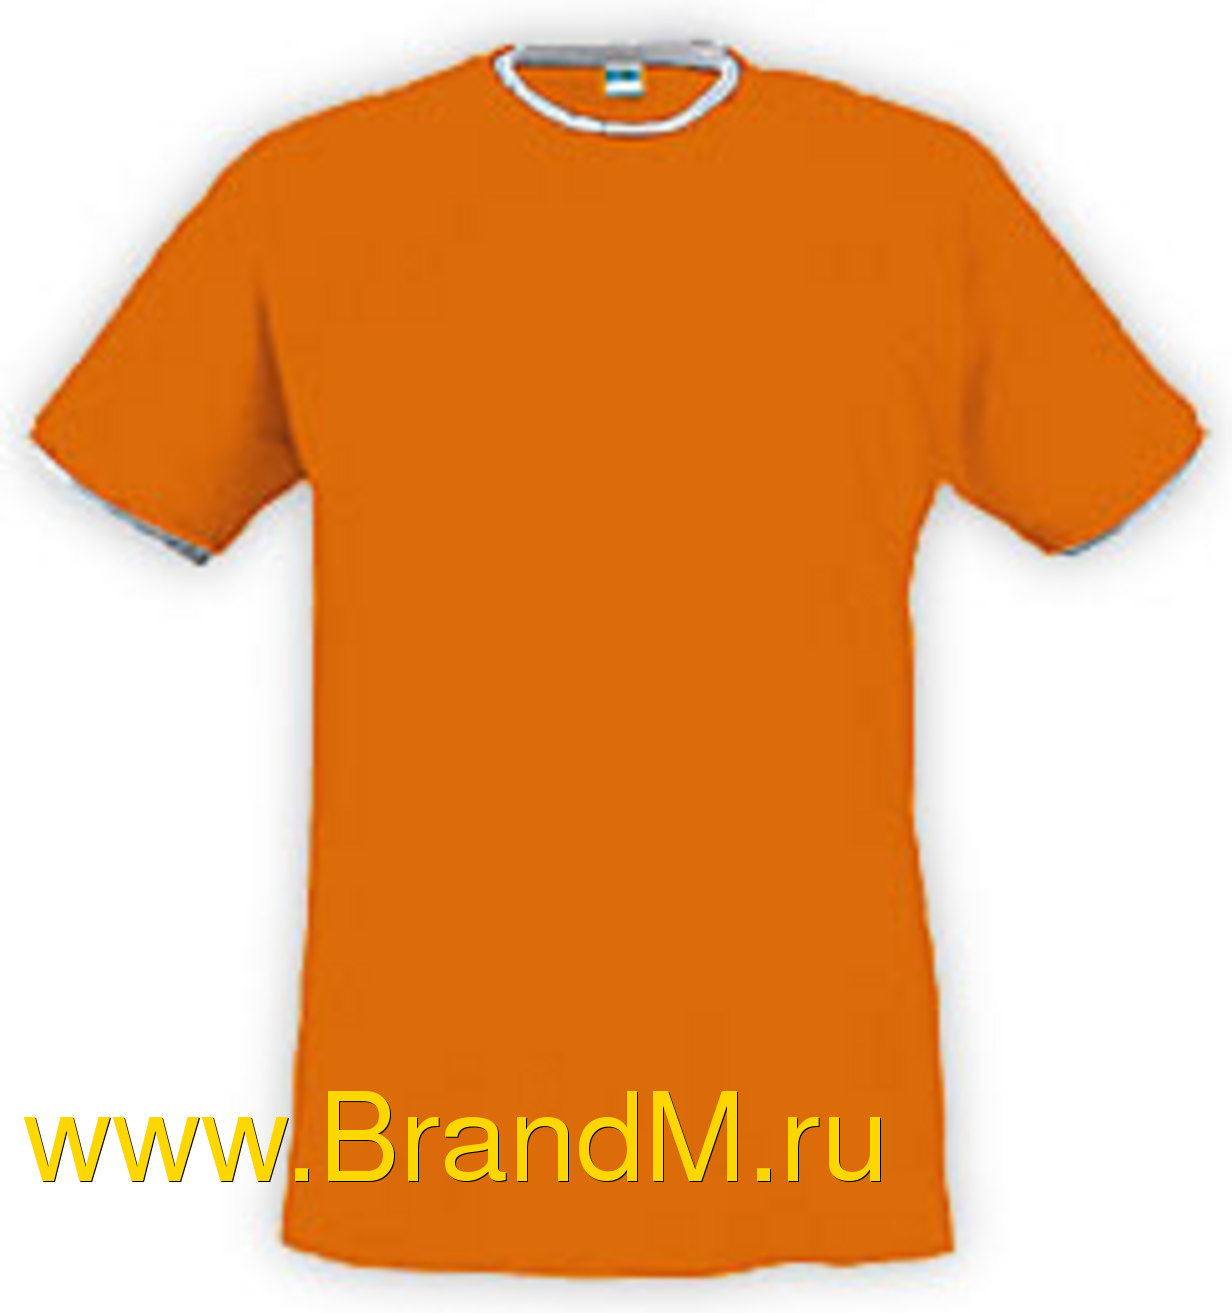 заказать футболку с надписью в Ставрополе в Чите